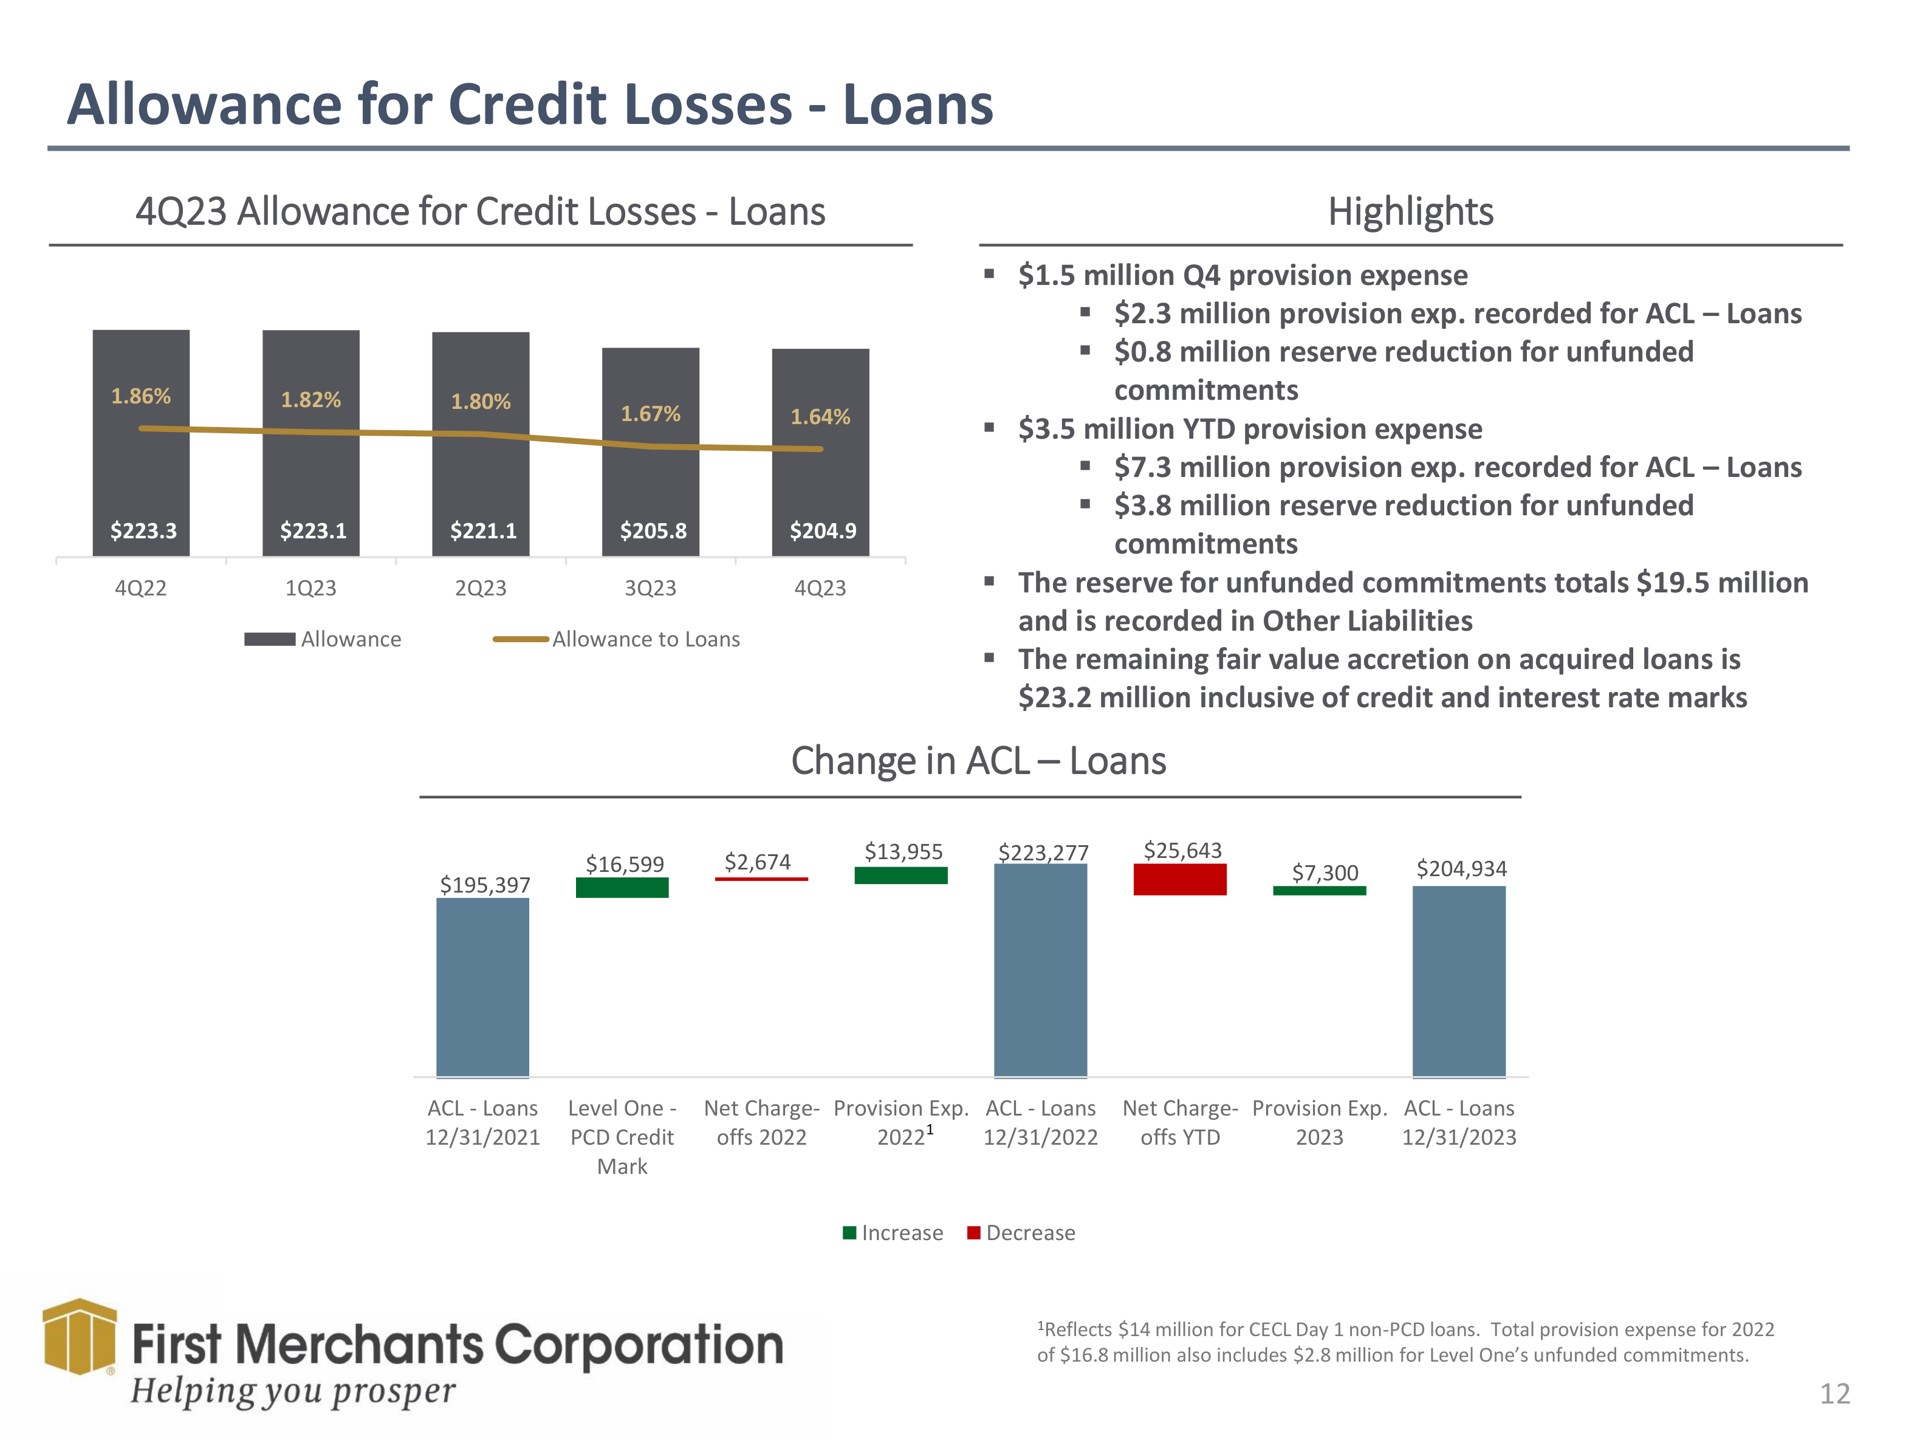 allowance for credit losses loans allowance for credit losses loans highlights change in loans first merchants corporation | First Merchants